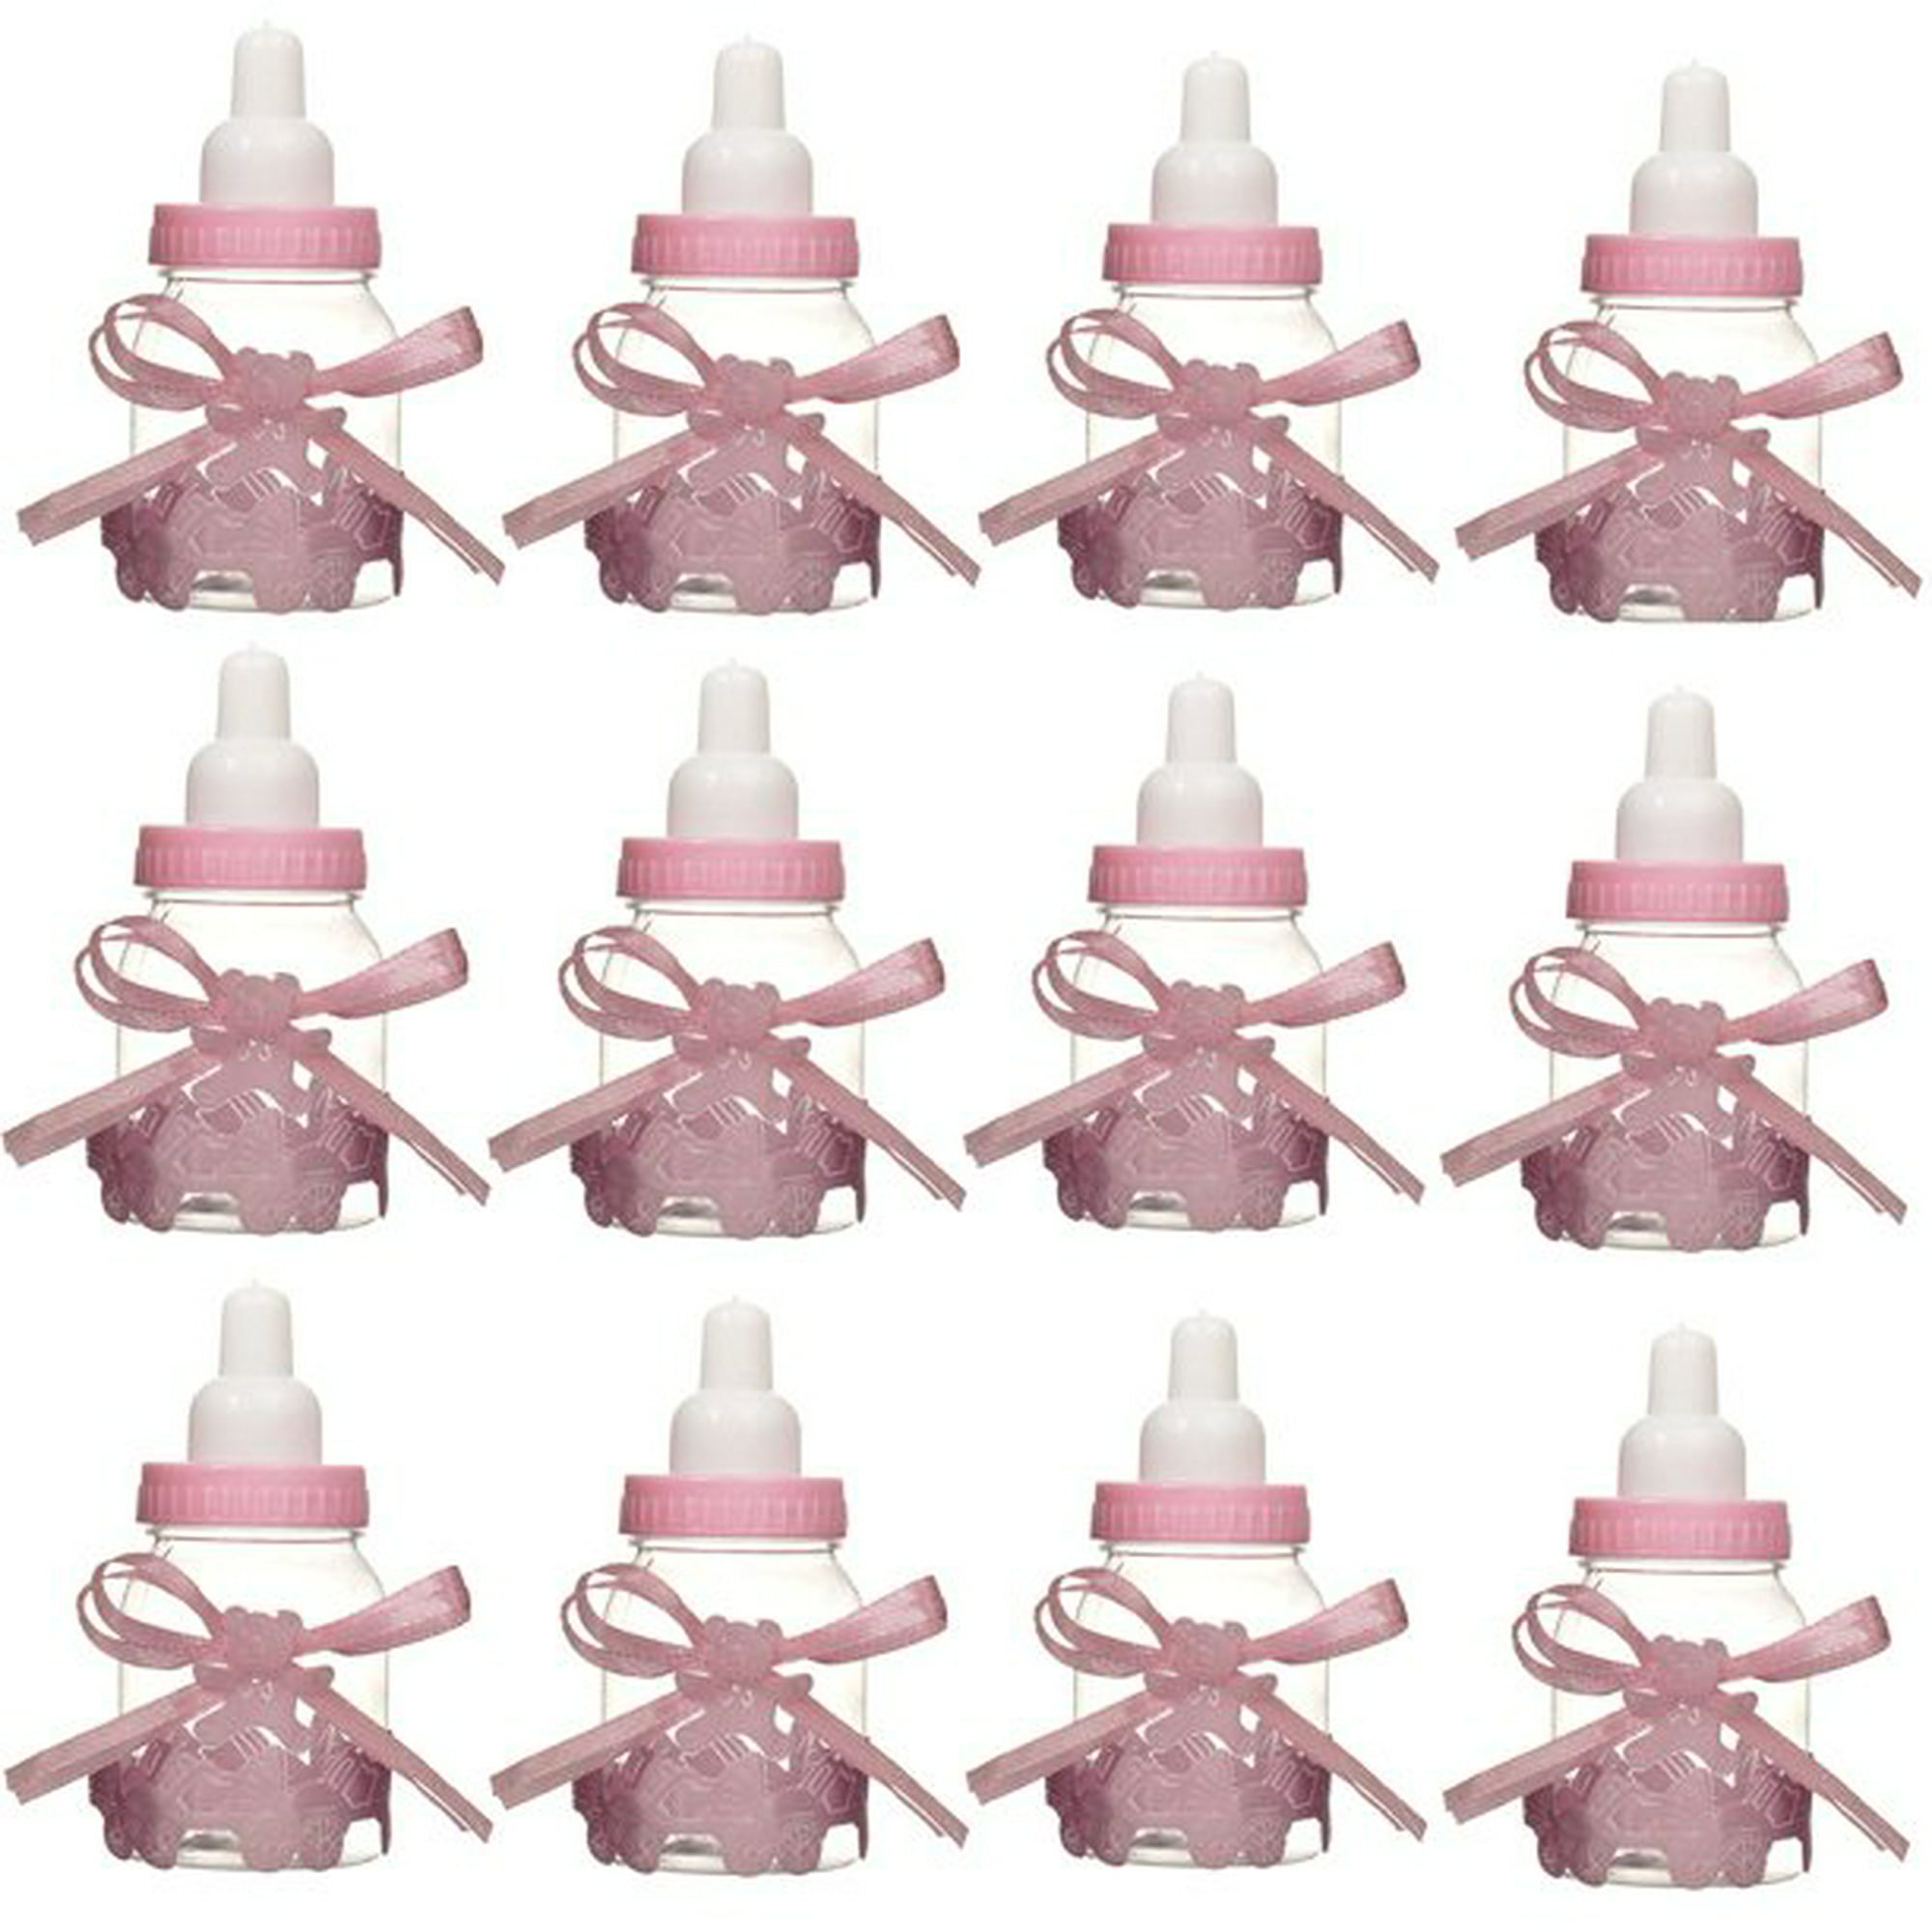  Mini biberones de plástico rellenables de 4.25 pulgadas, tapa  rosa a granel, 24 piezas para baby shower : Hogar y Cocina